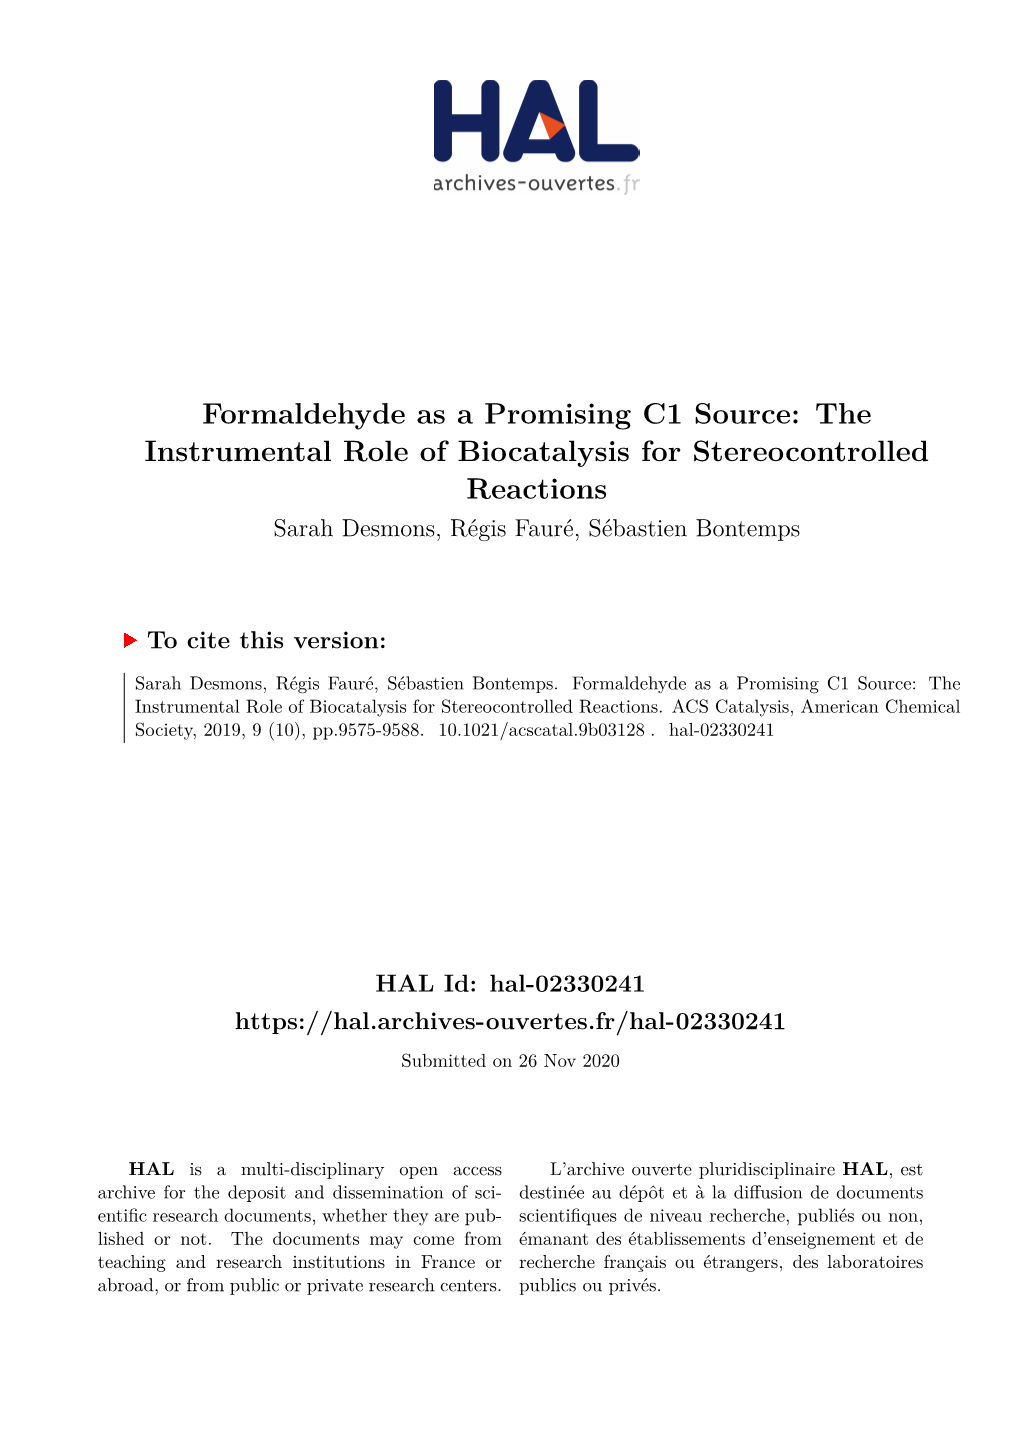 Formaldehyde As a Promising C1 Source: the Instrumental Role of Biocatalysis for Stereocontrolled Reactions Sarah Desmons, Régis Fauré, Sébastien Bontemps